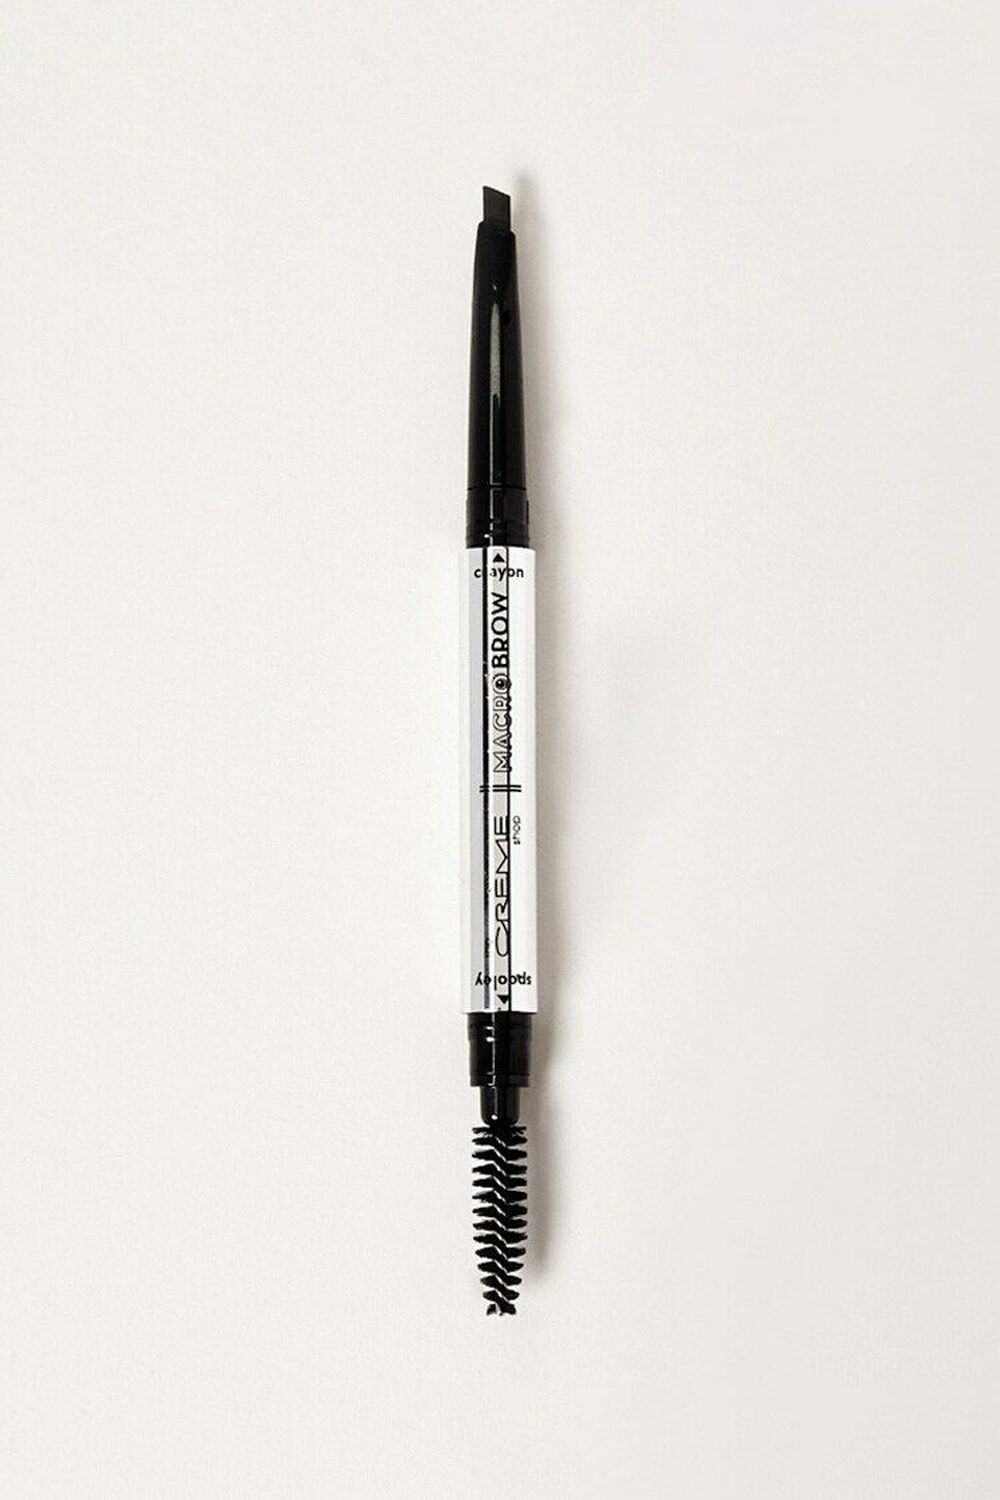 EBONY Macro Brow Pencil, image 1